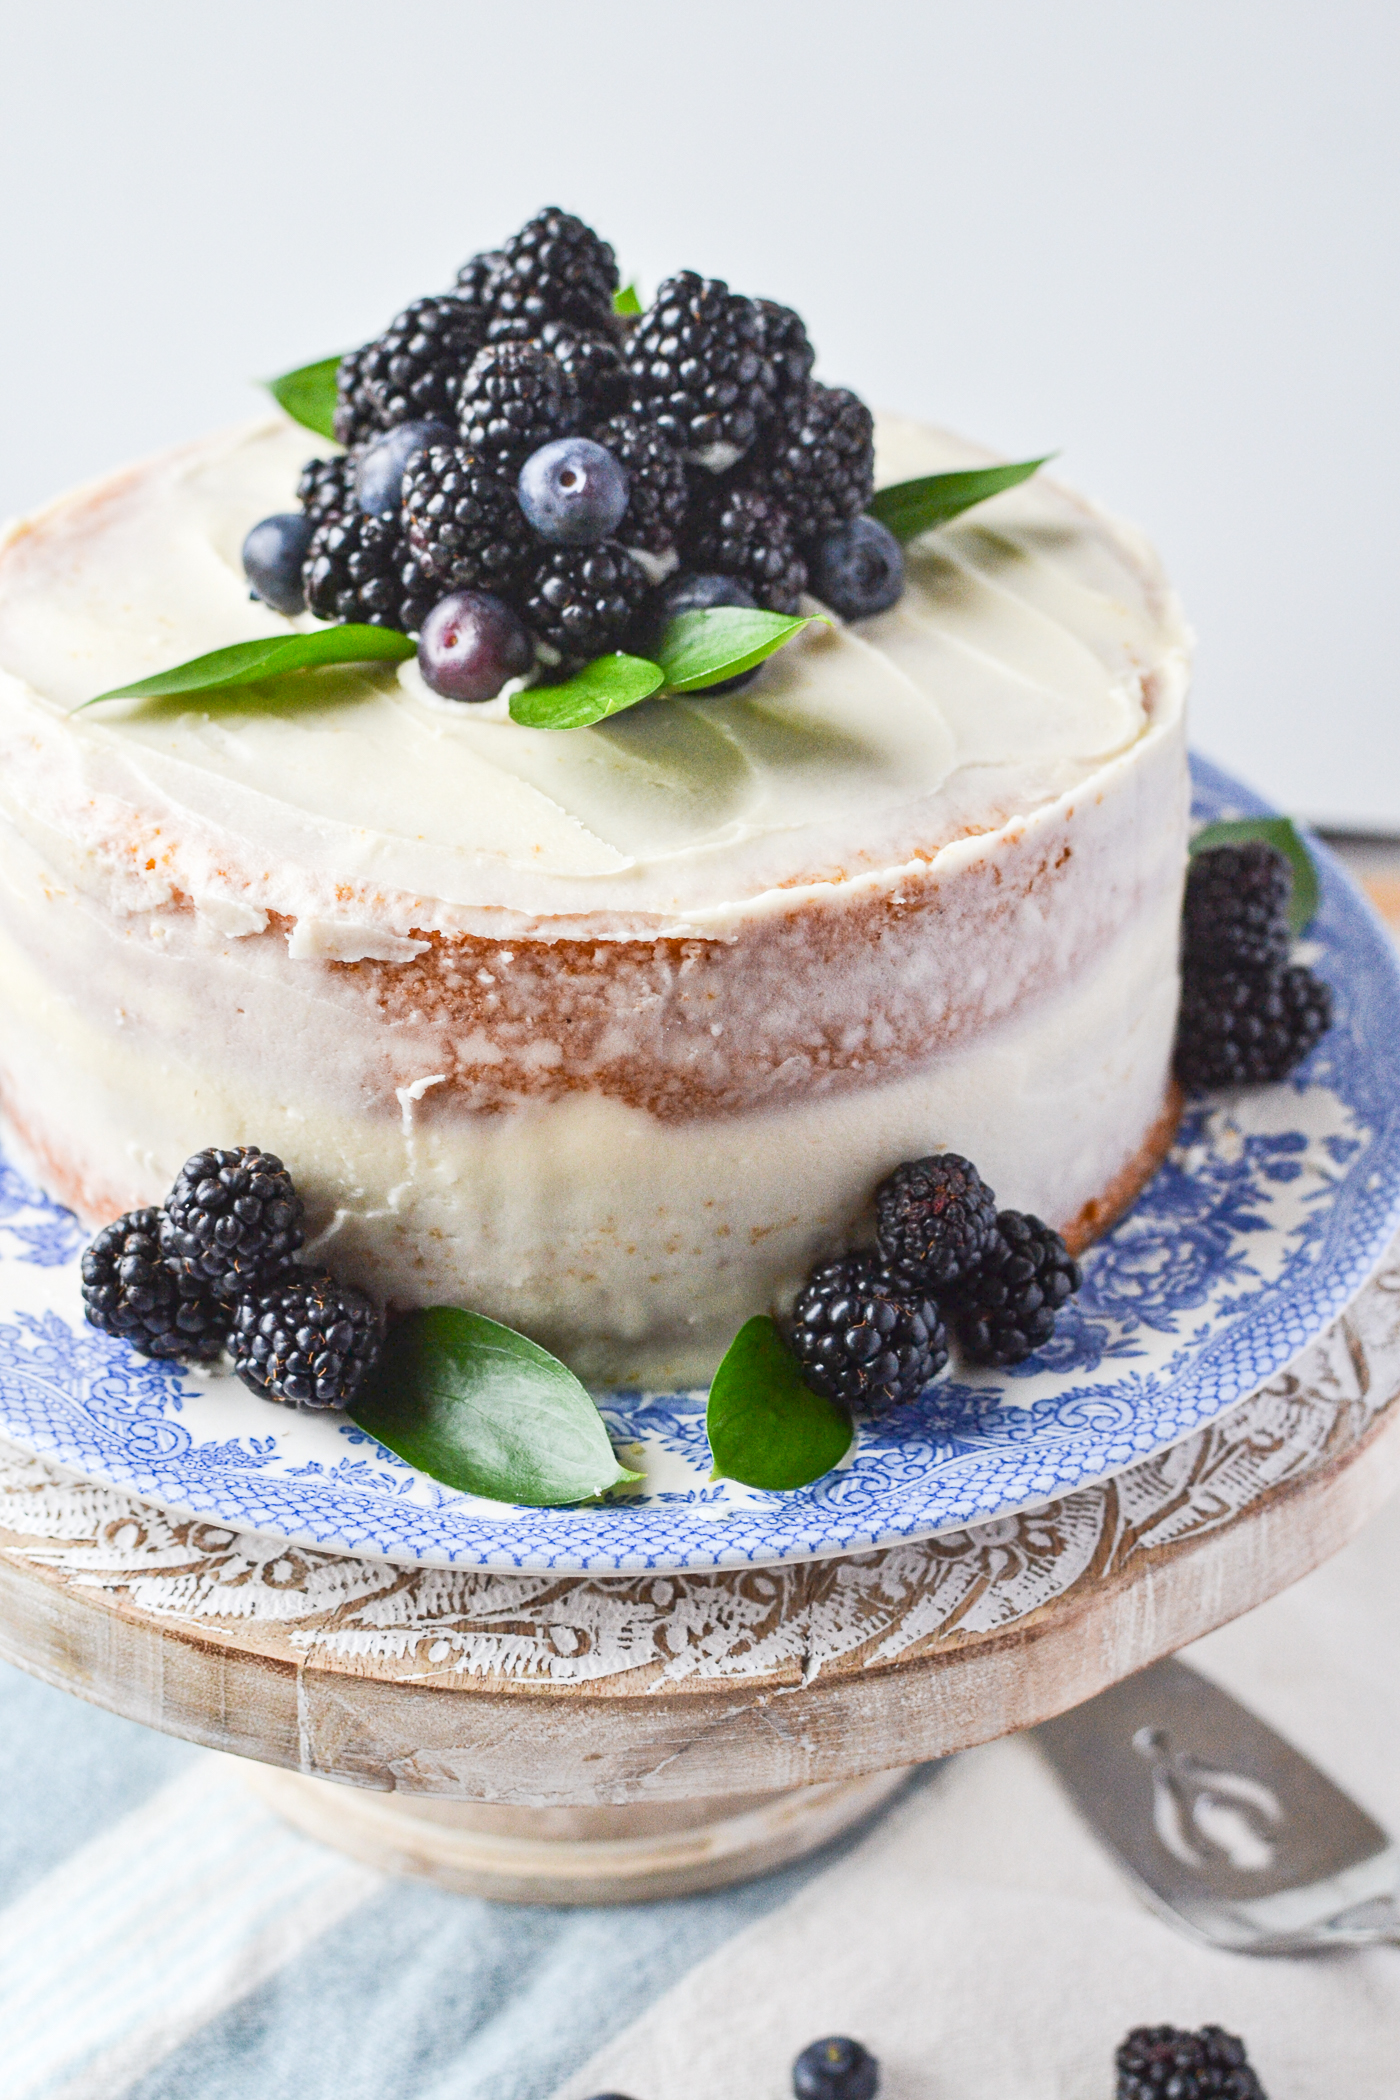 Best Lemon Blueberry Cake Recipe - How to Make Lemon Blueberry Cake